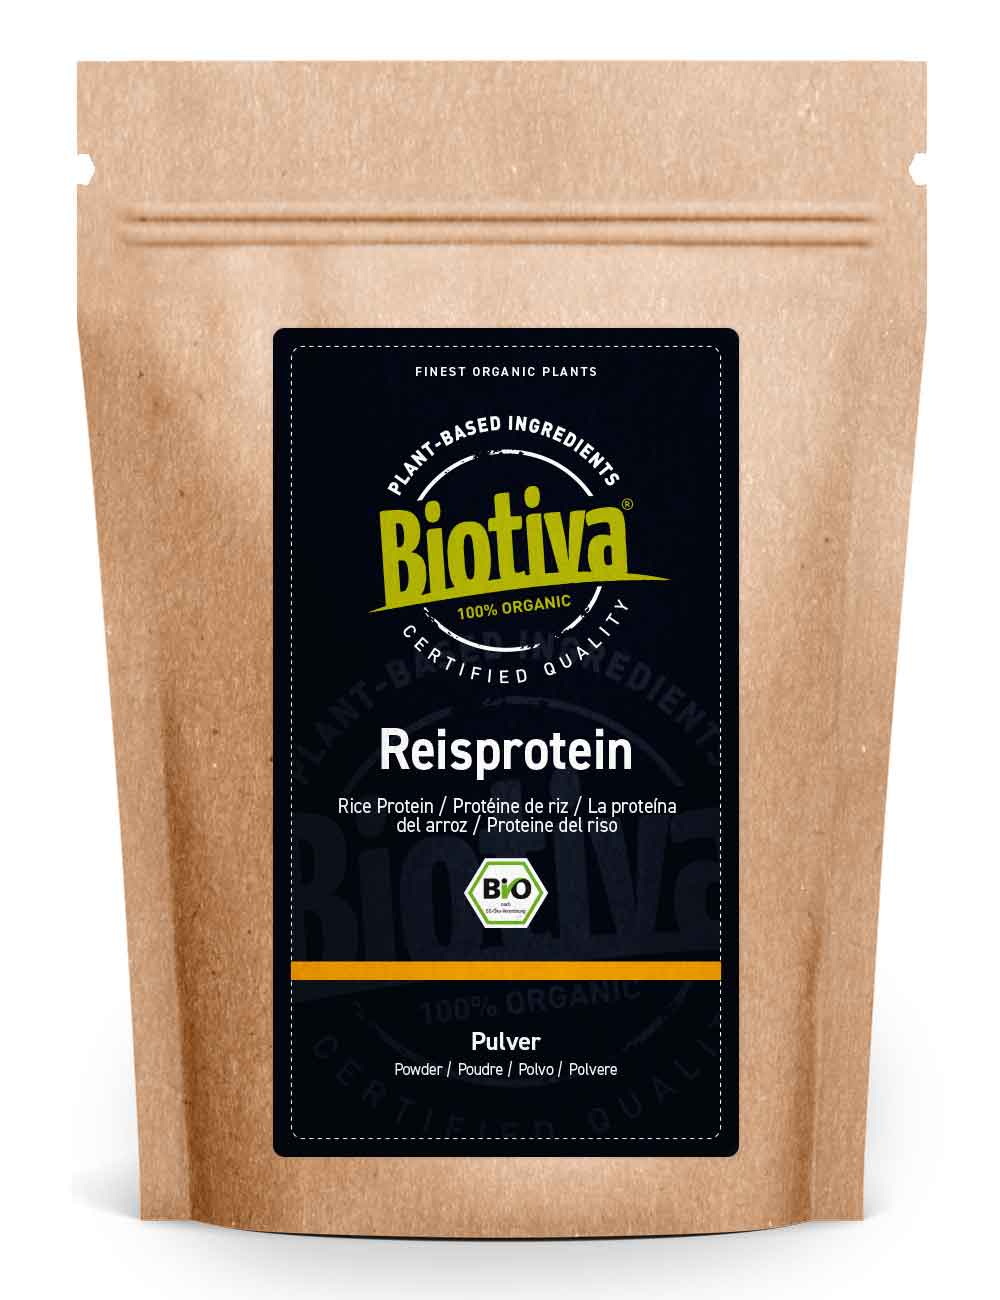 Reisprotein Pulver Bio